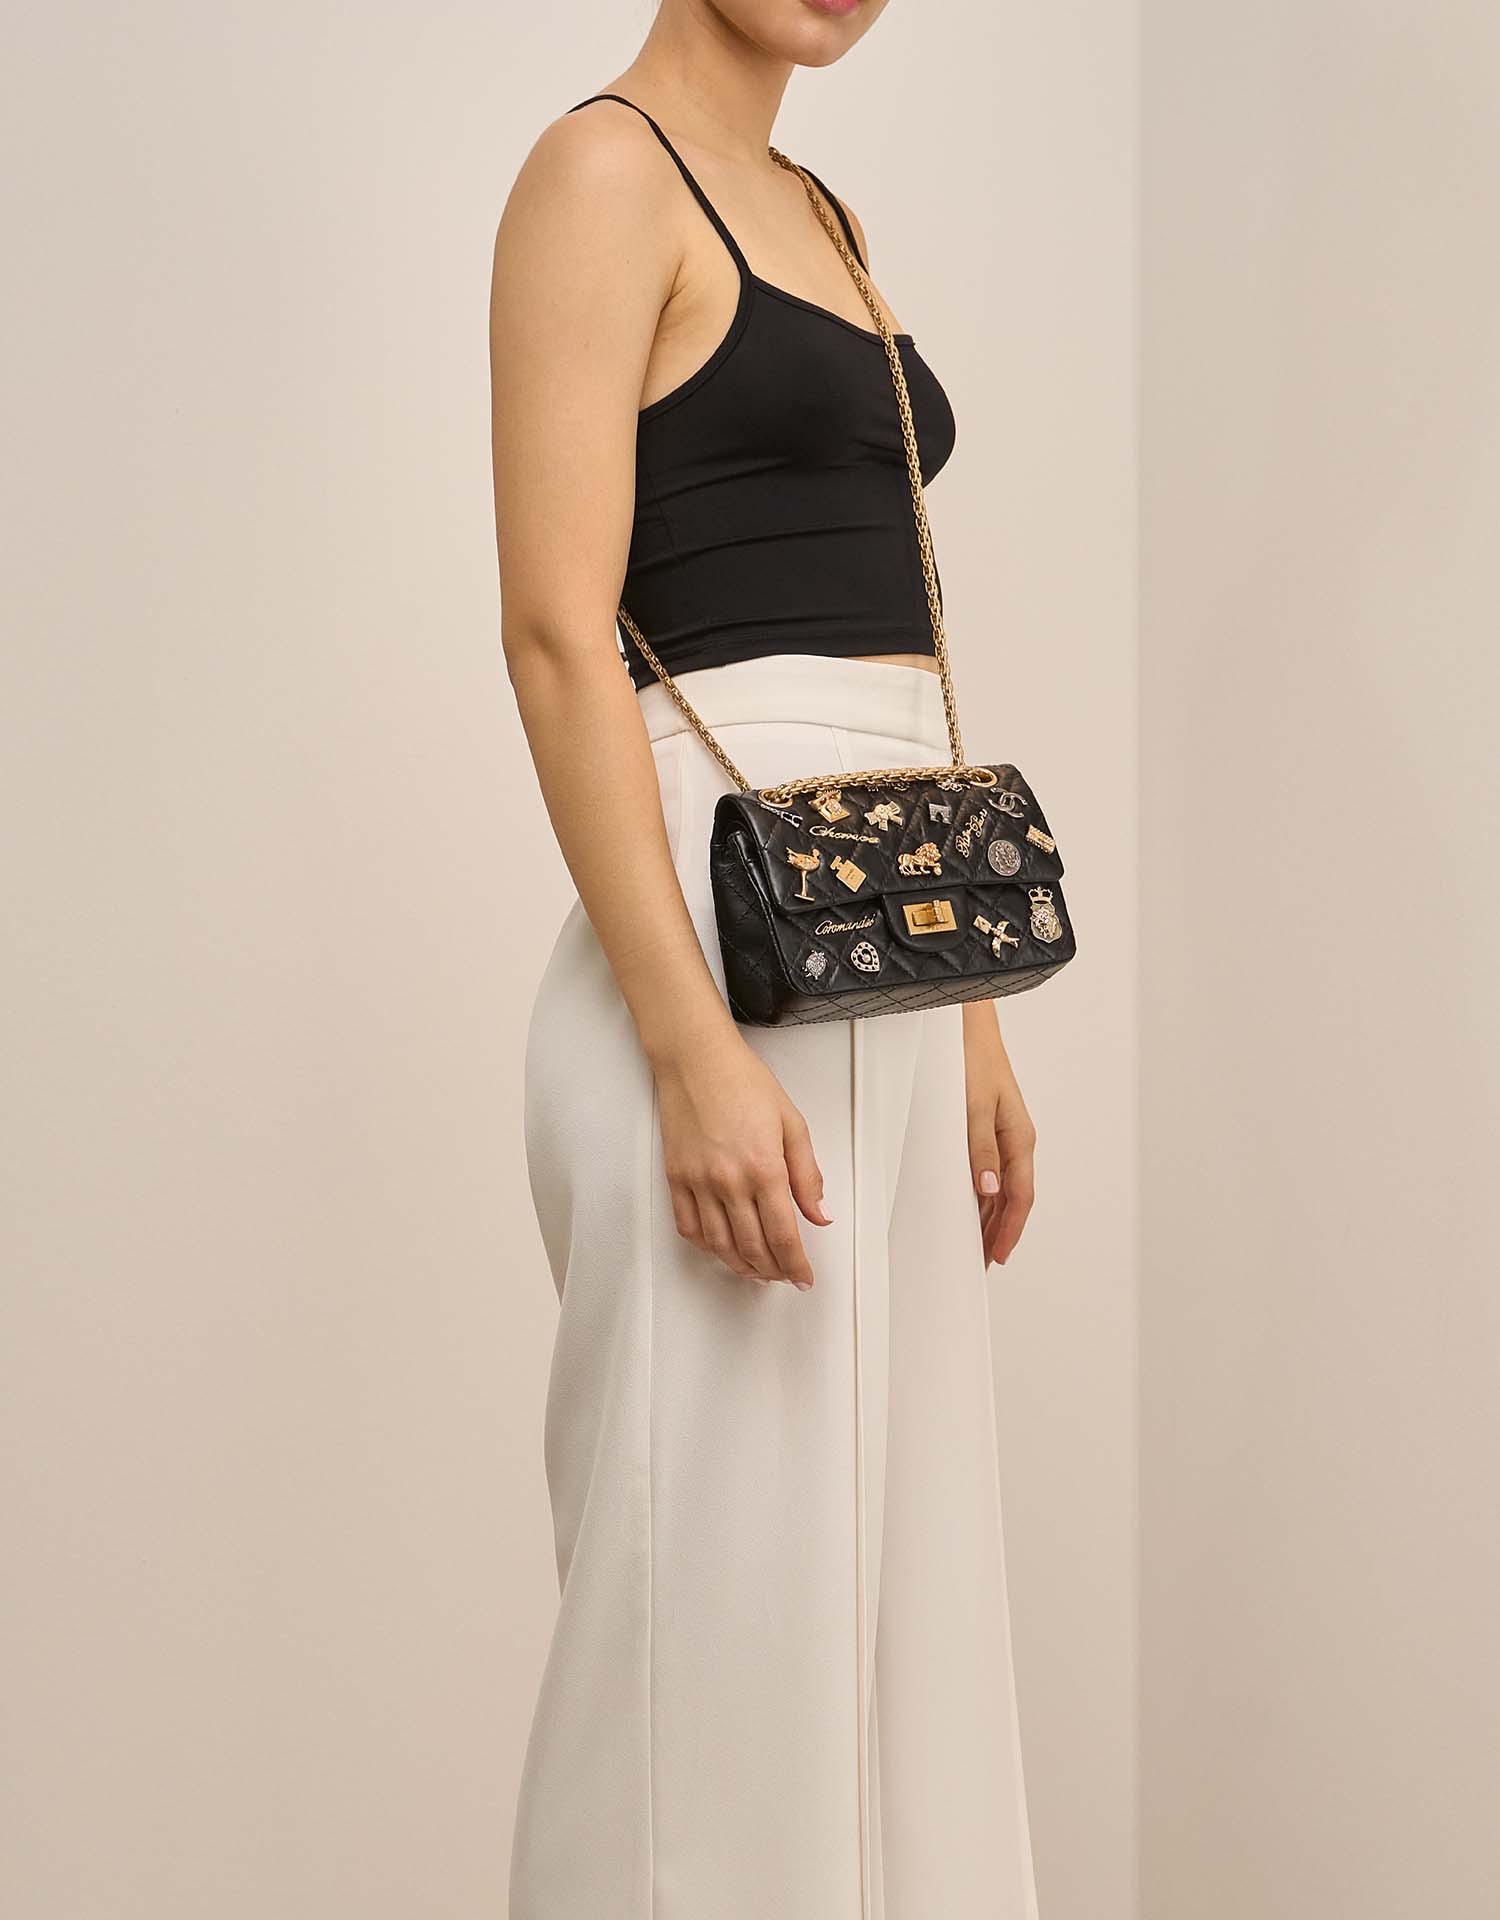 Chanel 255 225 Black on Model | Sell your designer bag on Saclab.com